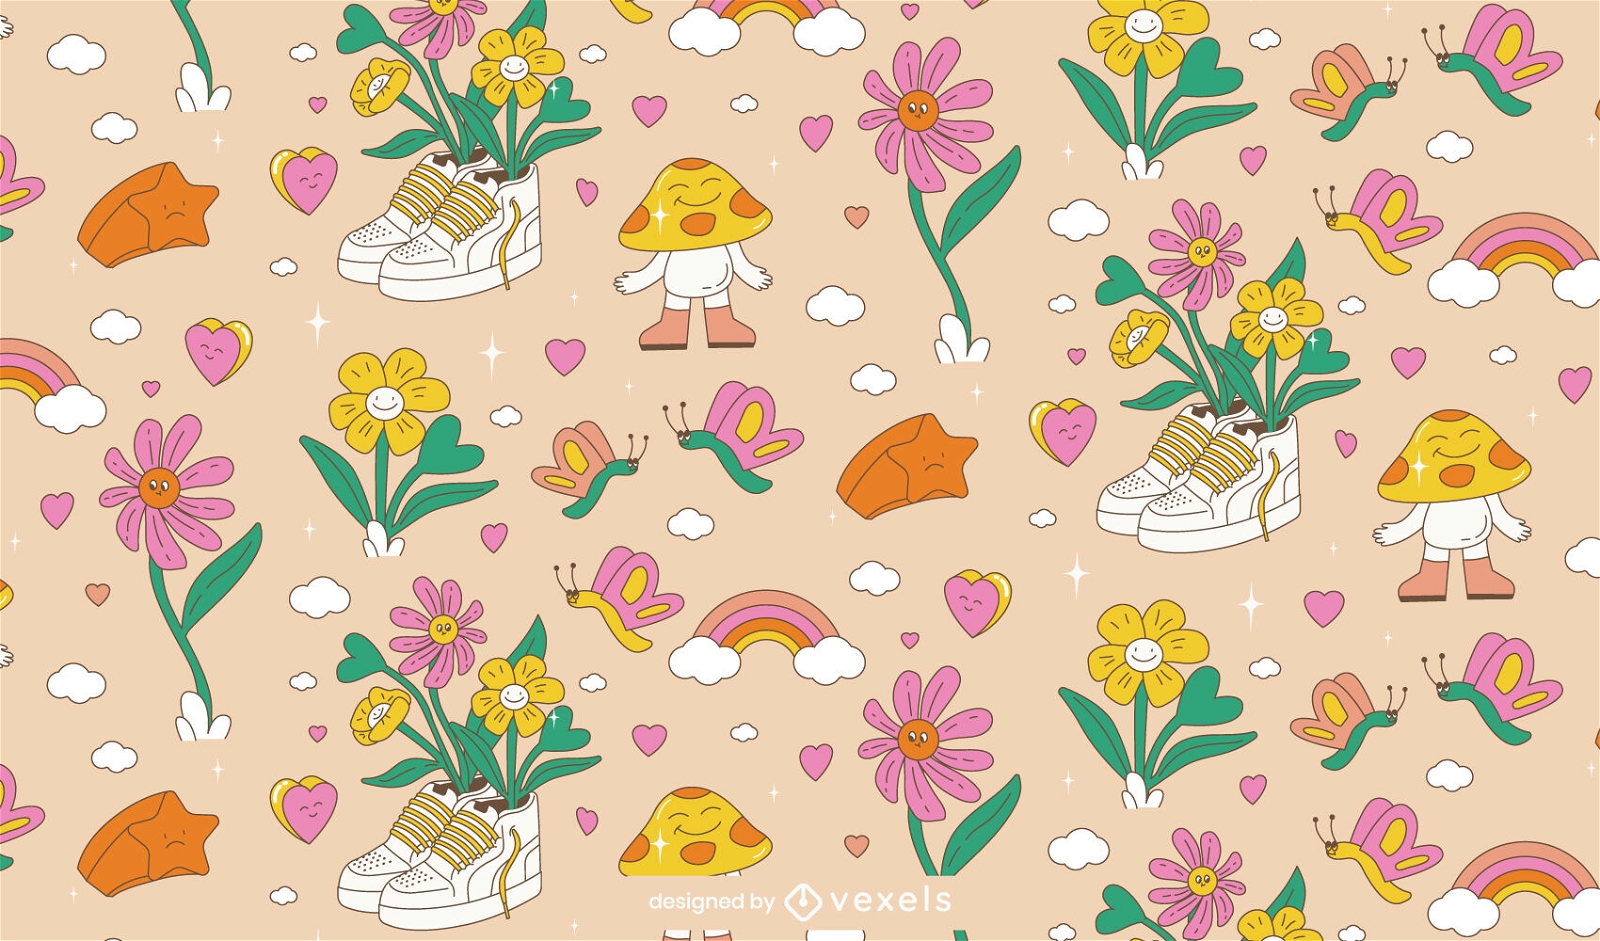 Cute Valentine's day pattern design